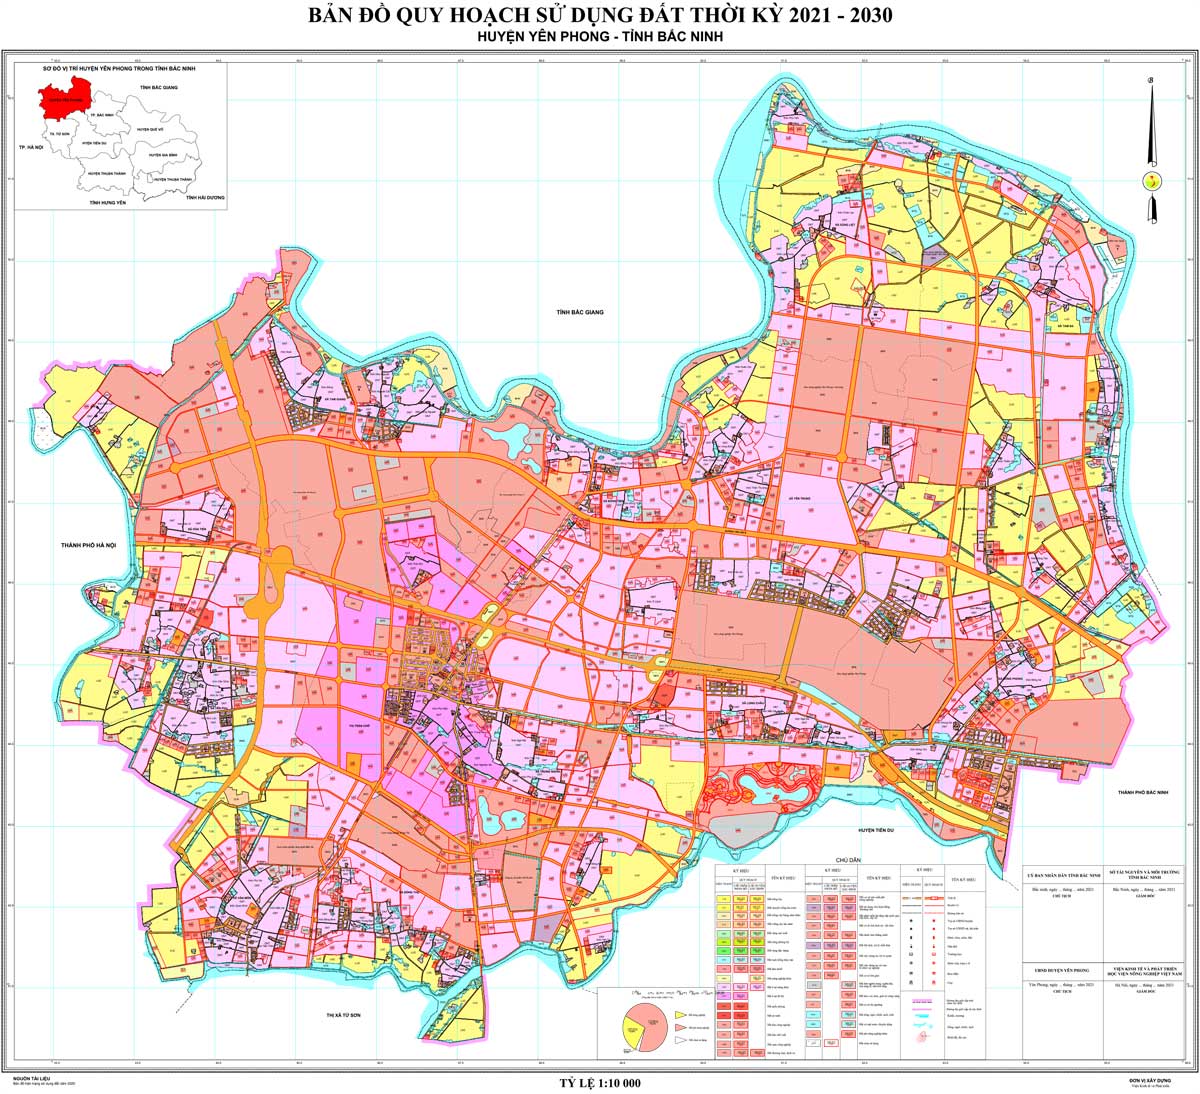 Bản đồ QHSDĐ huyện Yên Phong đến năm 2030